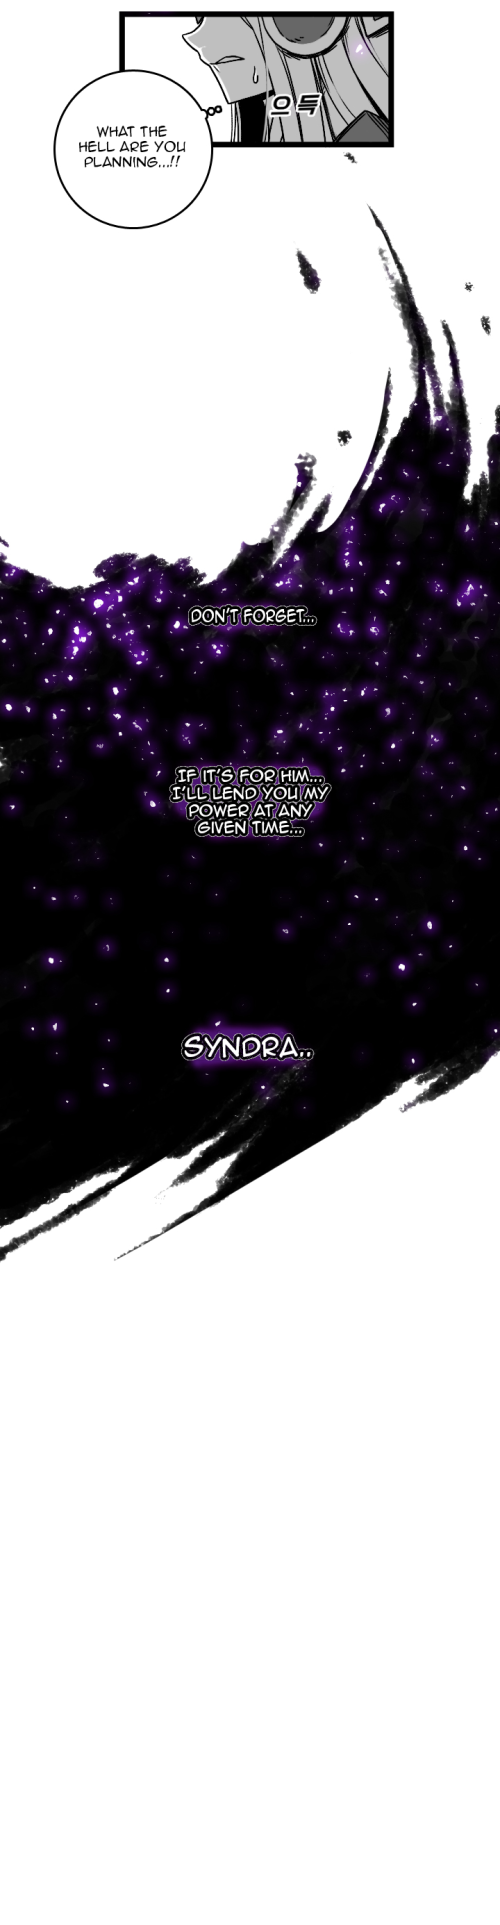 Syndra y zeds ordinario la vida temporada 3 Parte 17